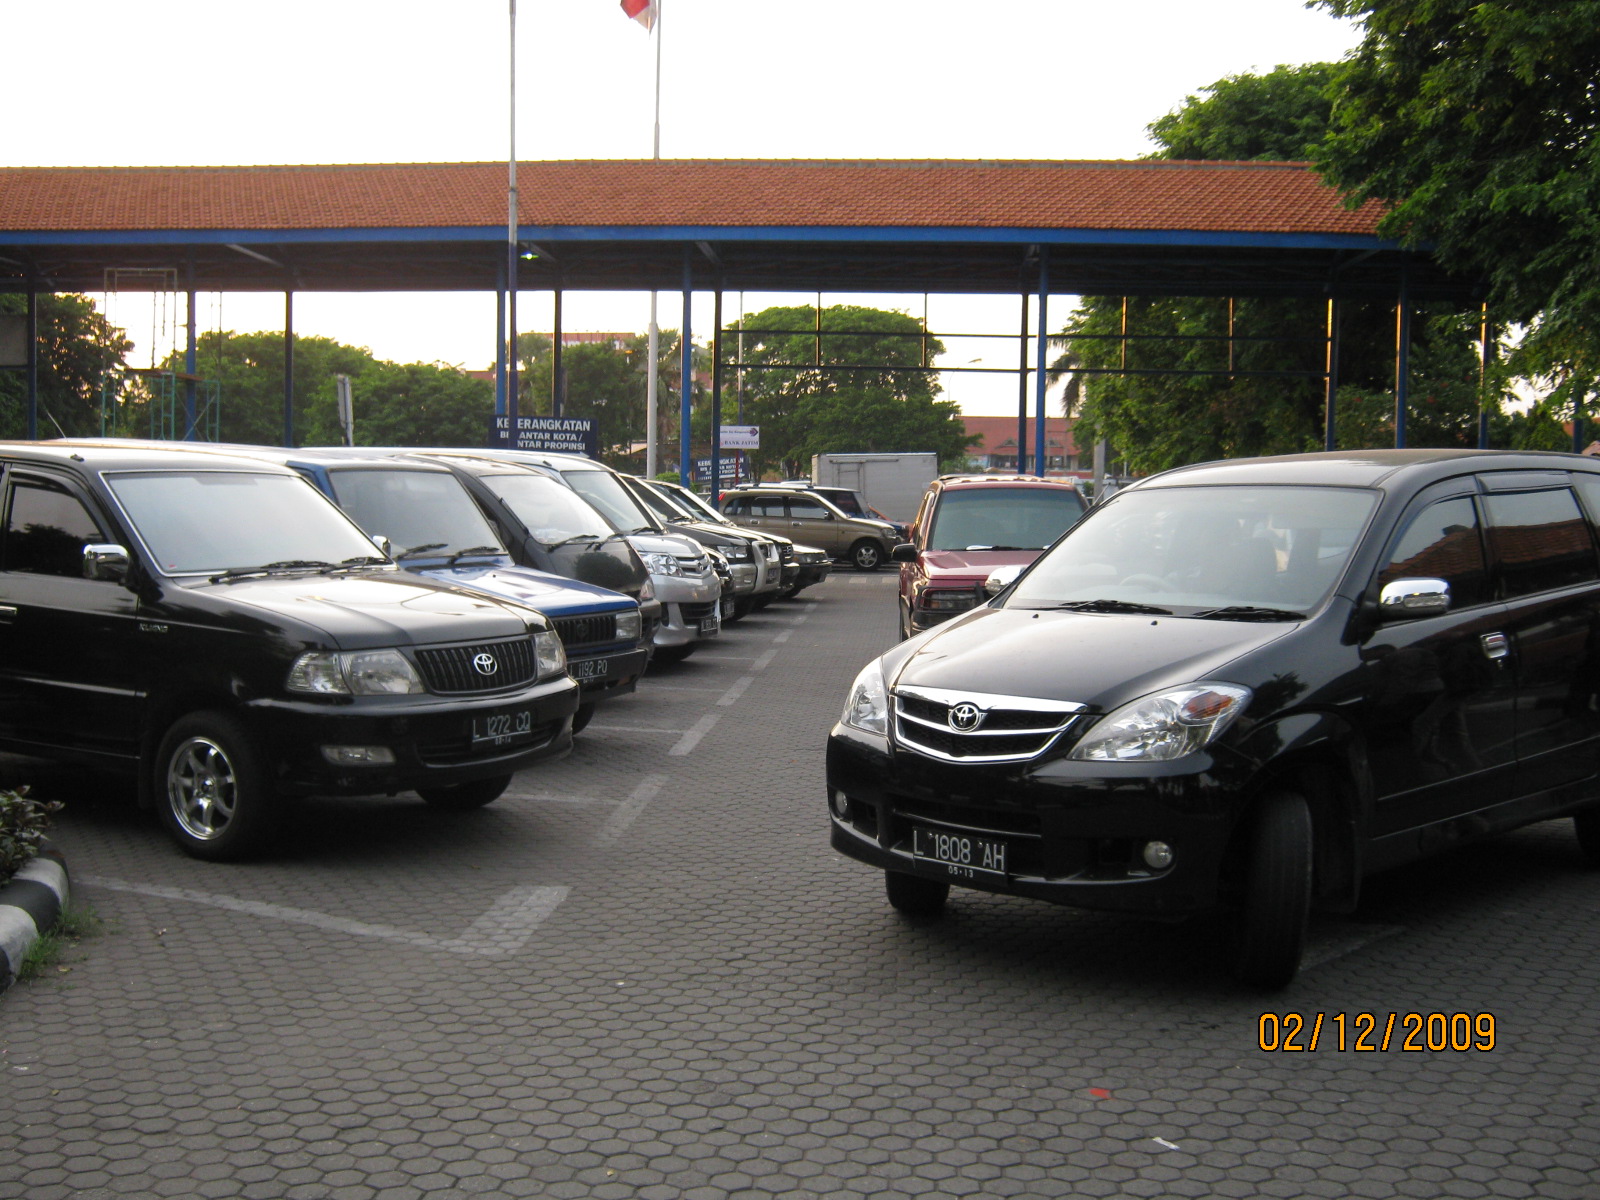 sebenarnya-ongkos-parkir-indonesia-itu-paling-murah-di-dunia-lho